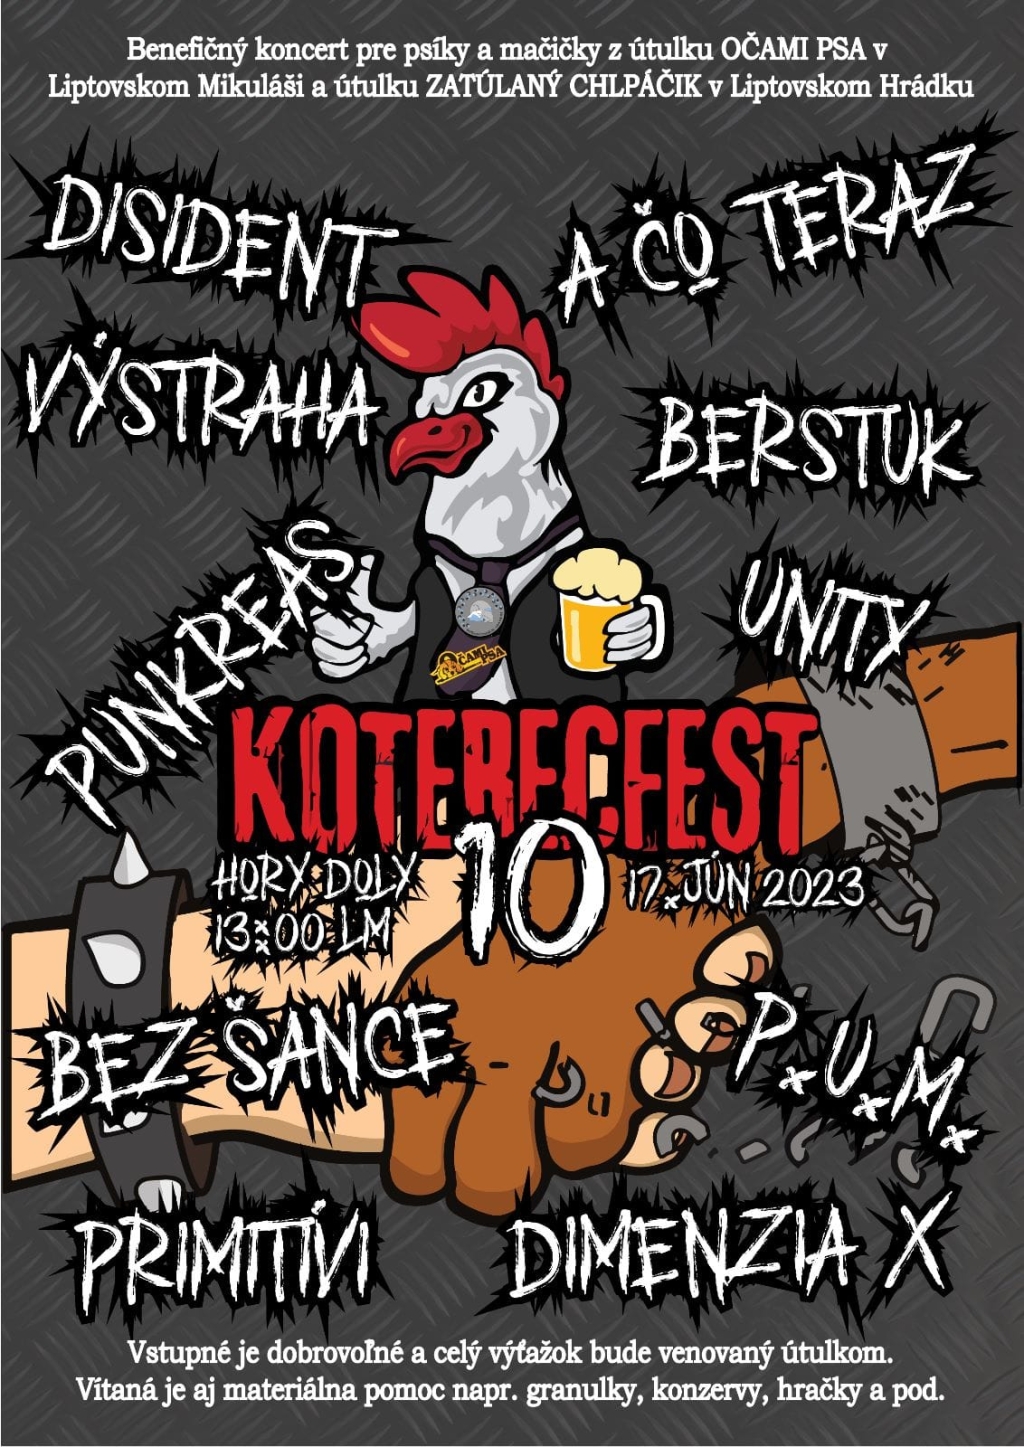 Koterecfest 2023